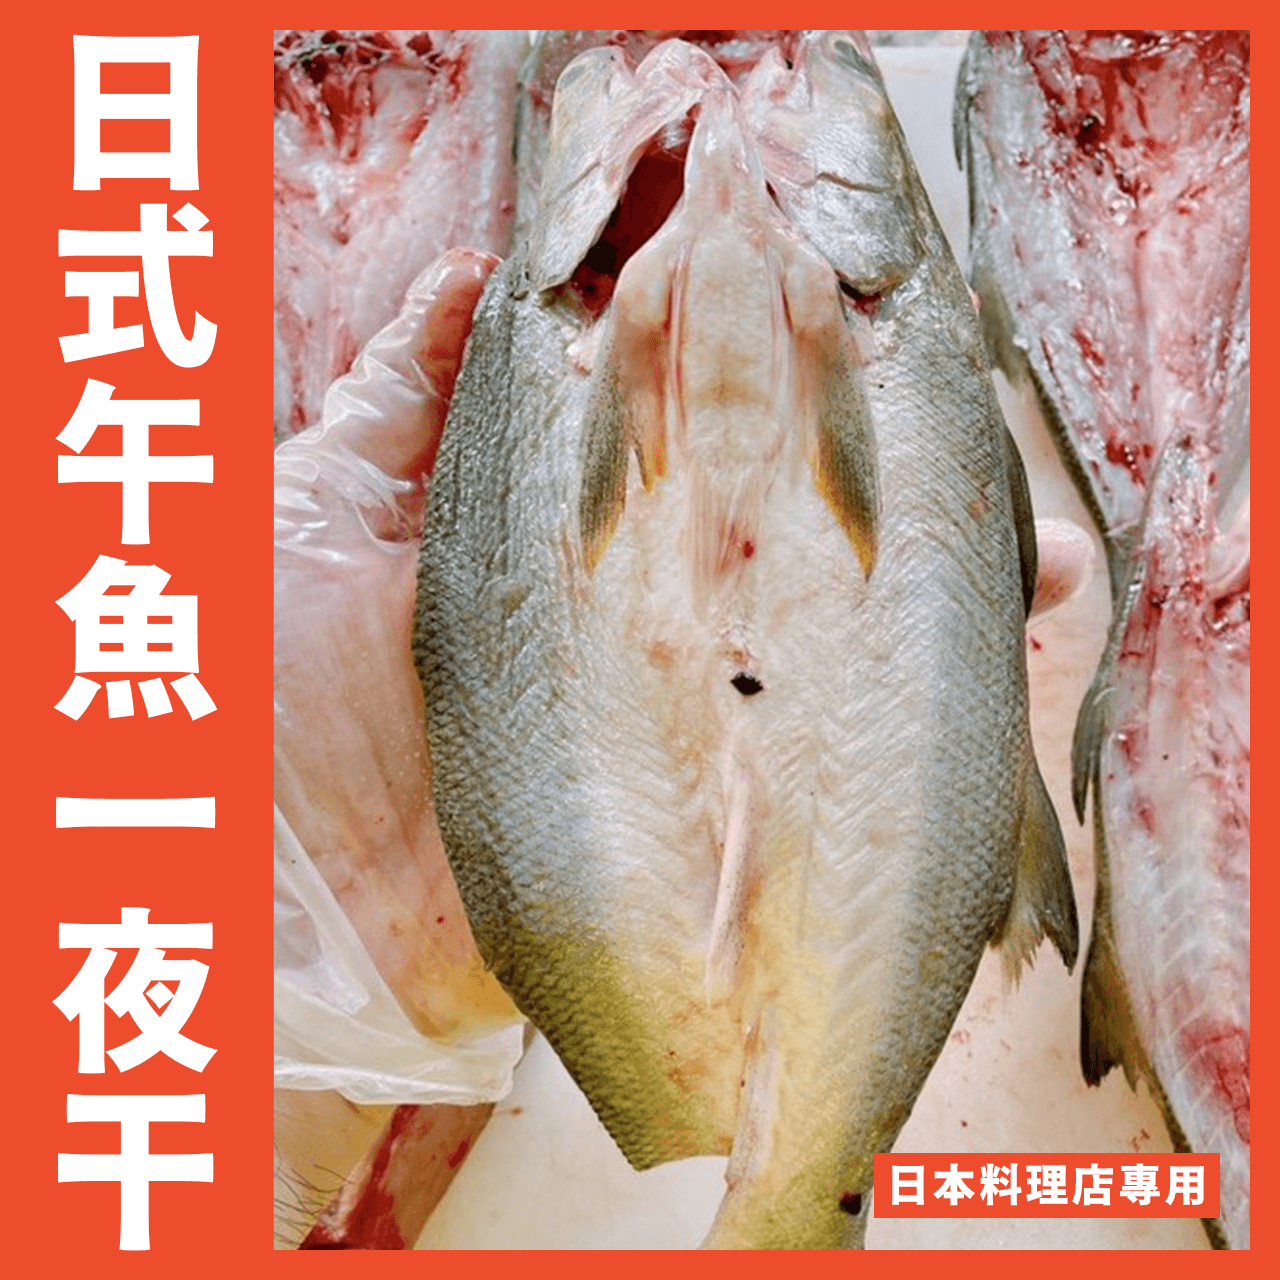 【天天來海鮮】日本料理界頂級午仔魚一夜干250/300g尾